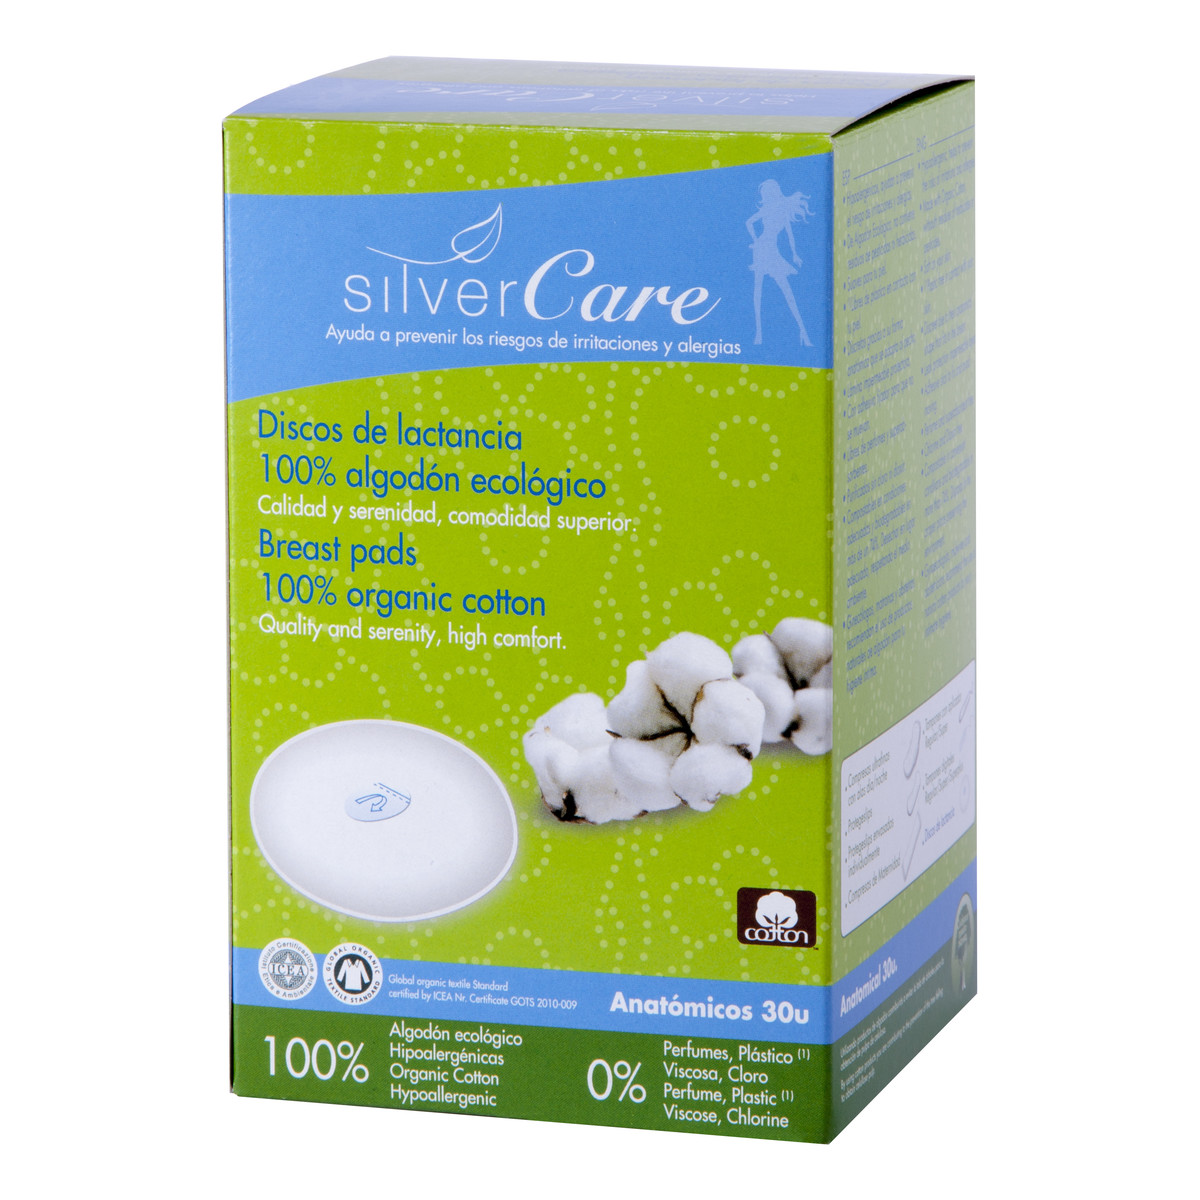 MASMI Silver Care Wkładki laktacyjne 100% bawełny organicznej 30szt